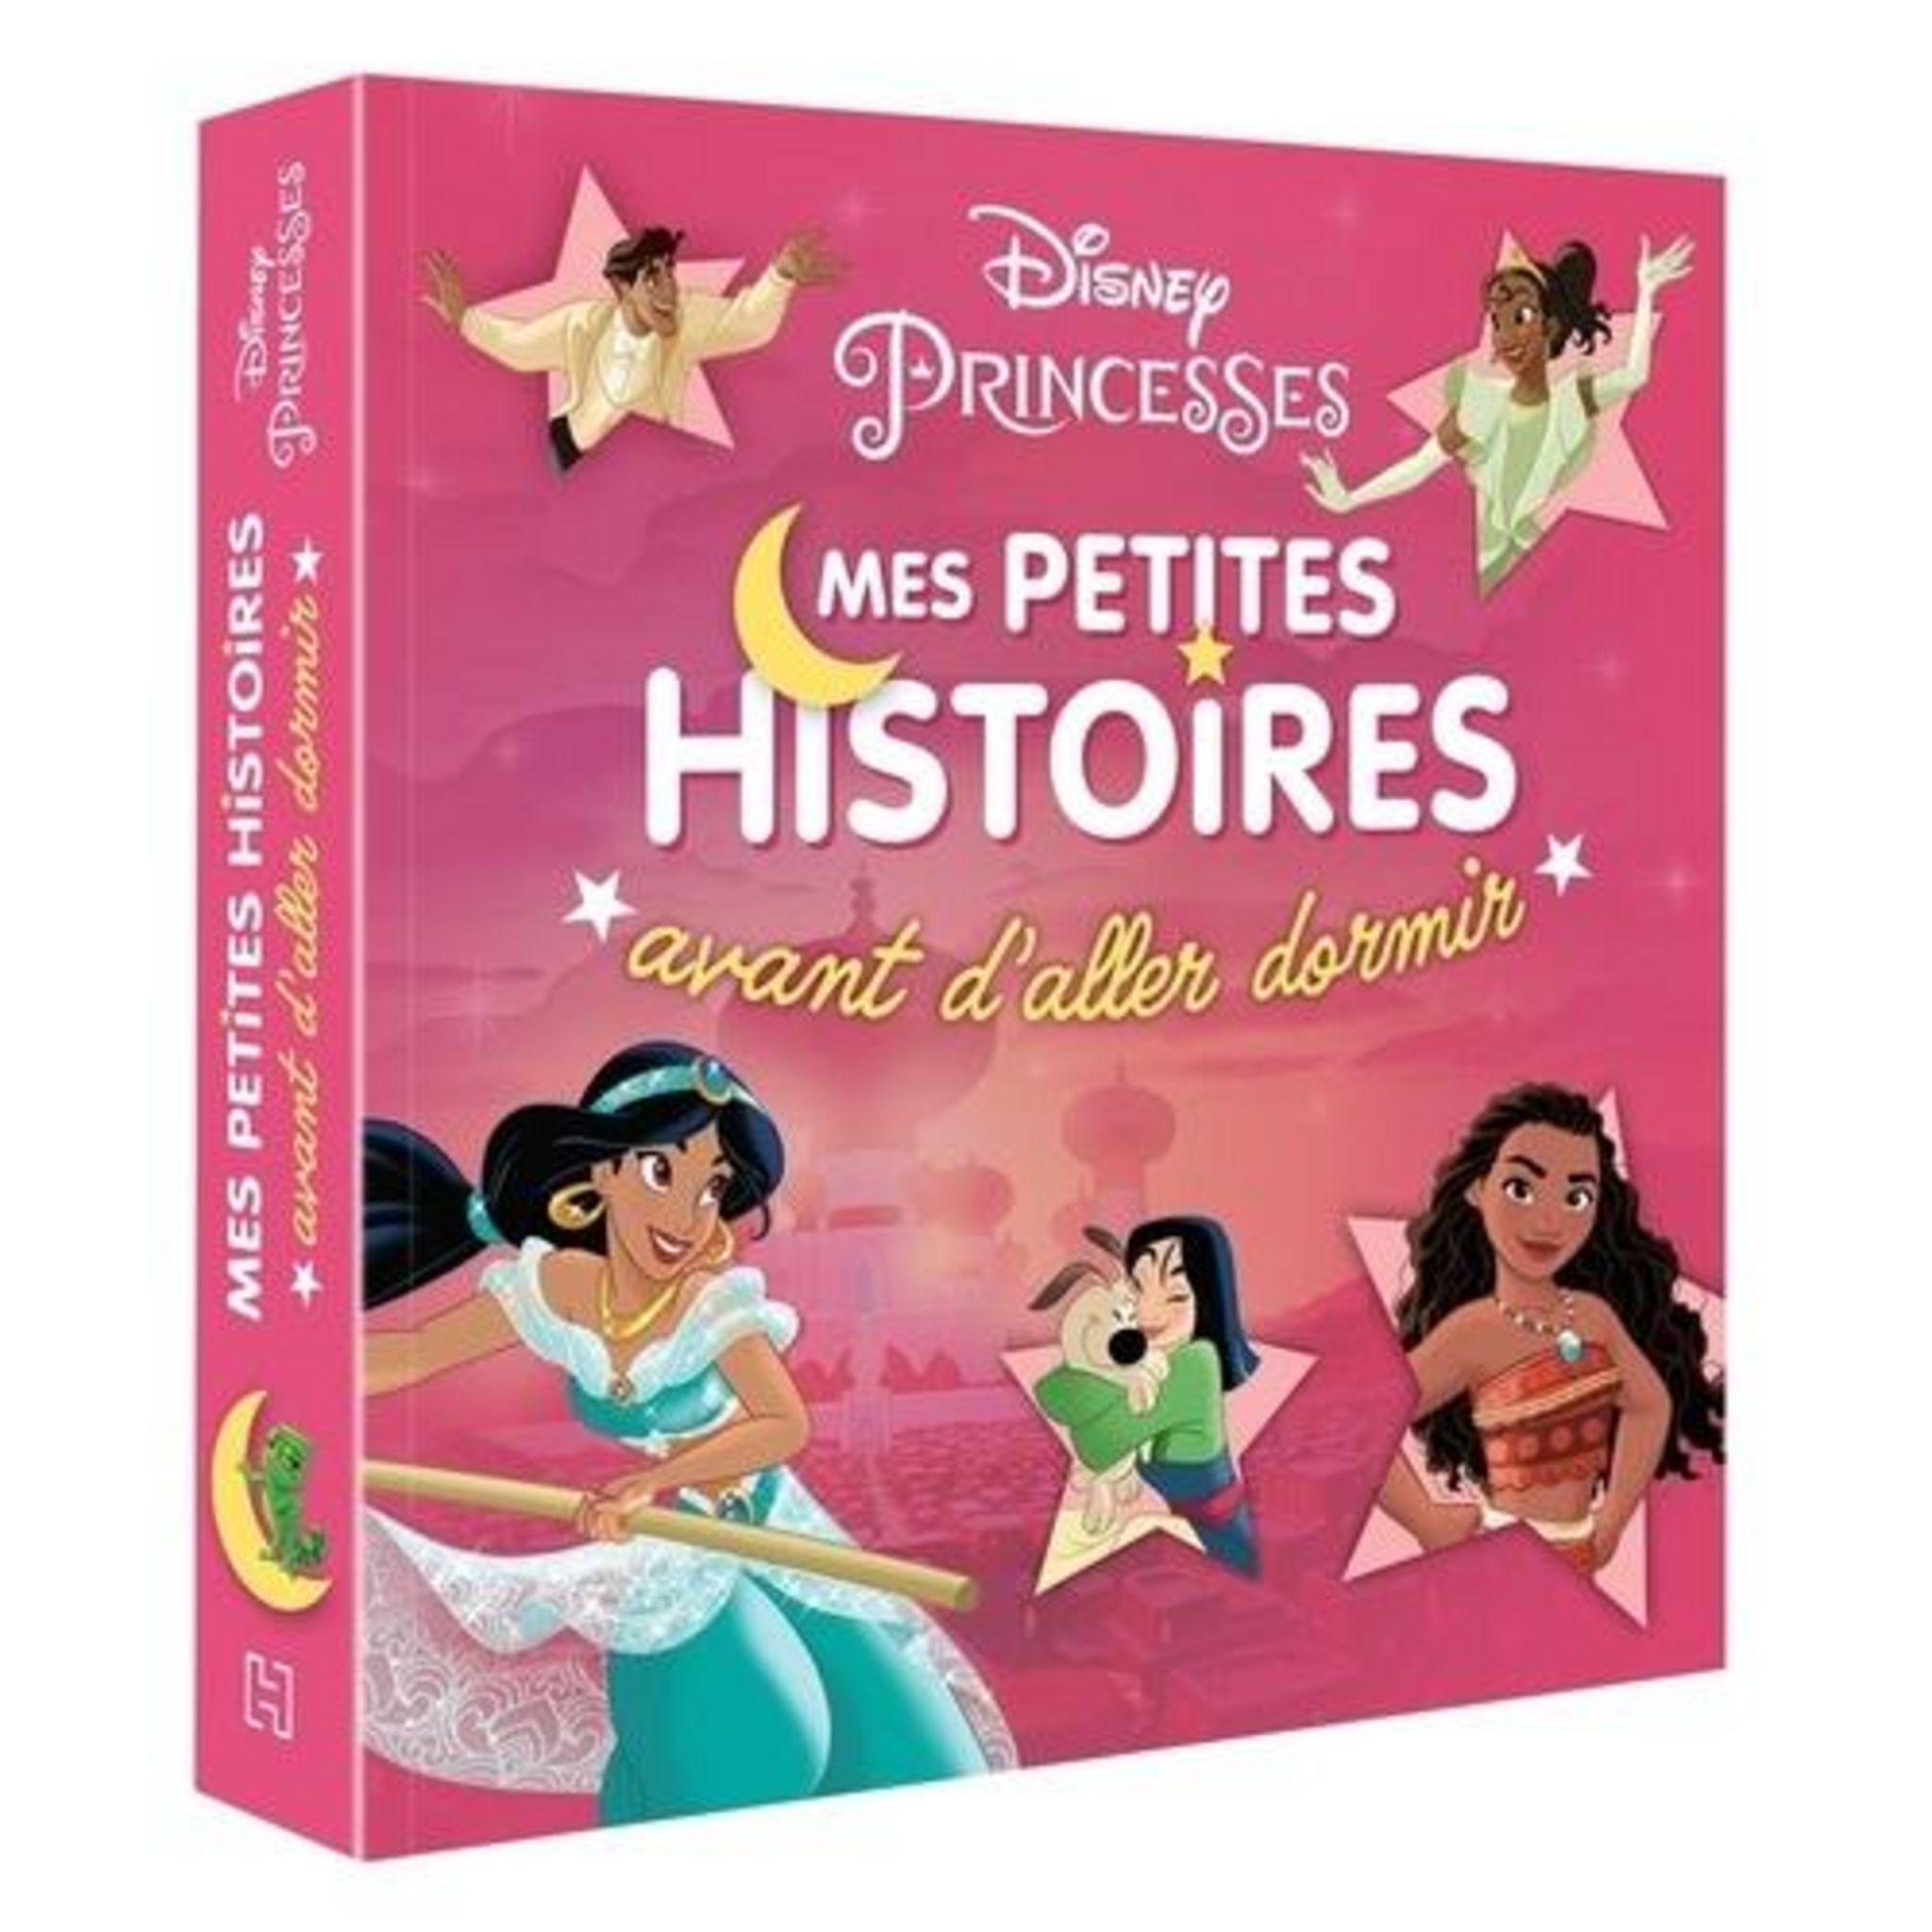 La Belle et la Bête de Disney - Album - Livre - Decitre